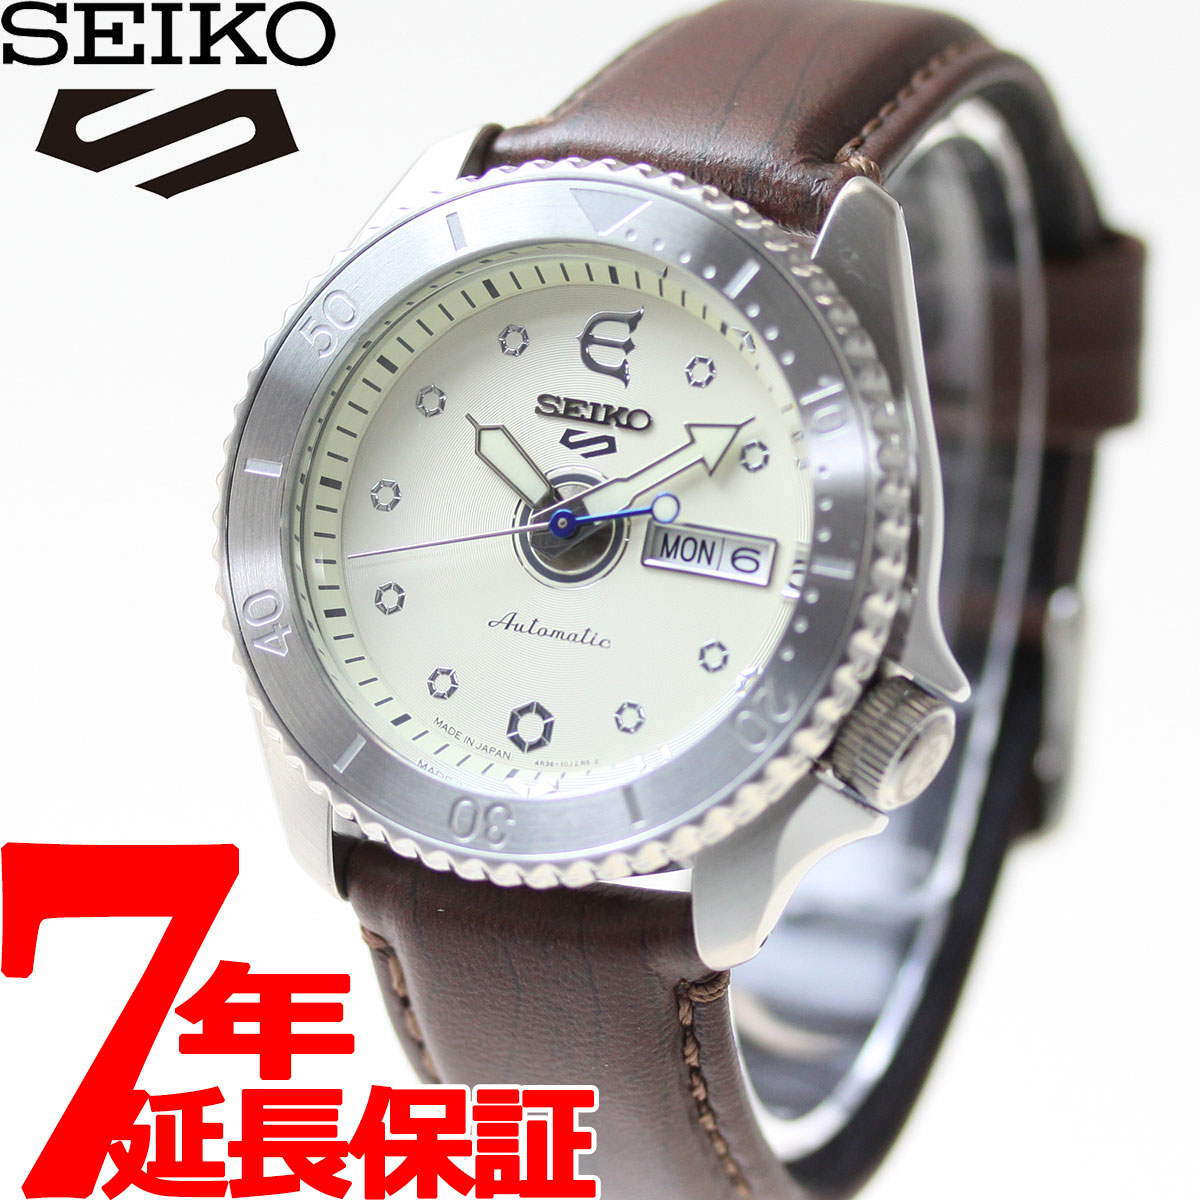 セイコーファイブ セイコー5 スポーツ SEIKO 5 SPORTS × EVISEN SKATEBOARDS コラボ 限定モデル 自動巻き メカニカル 腕時計 メンズ セイコーファイブ センス Sense SBSA103